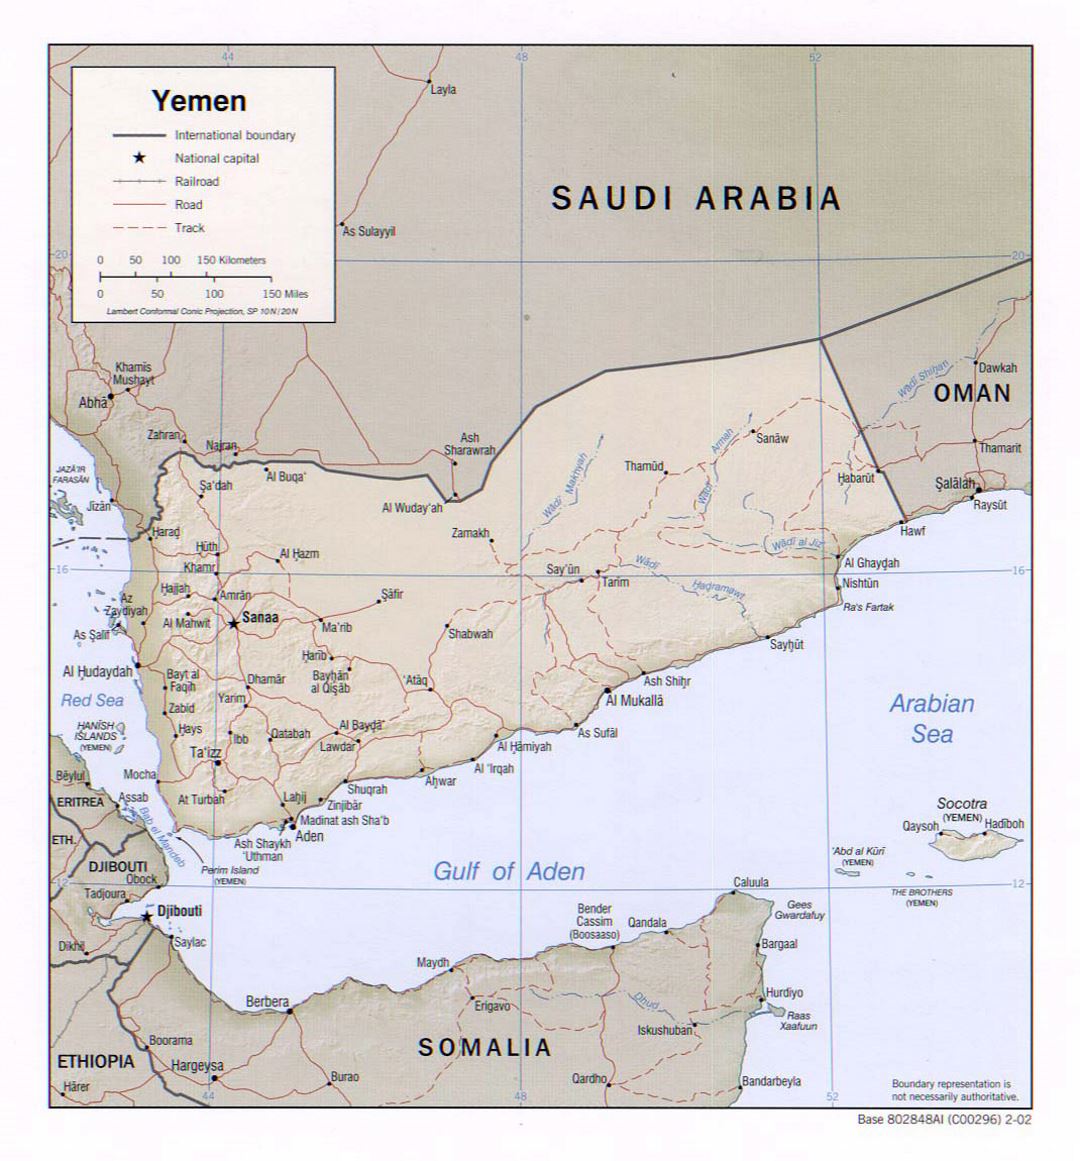 Detallado mapa político de Yemen con socorro, carreteras, ferrocarriles y principales ciudades - 2002